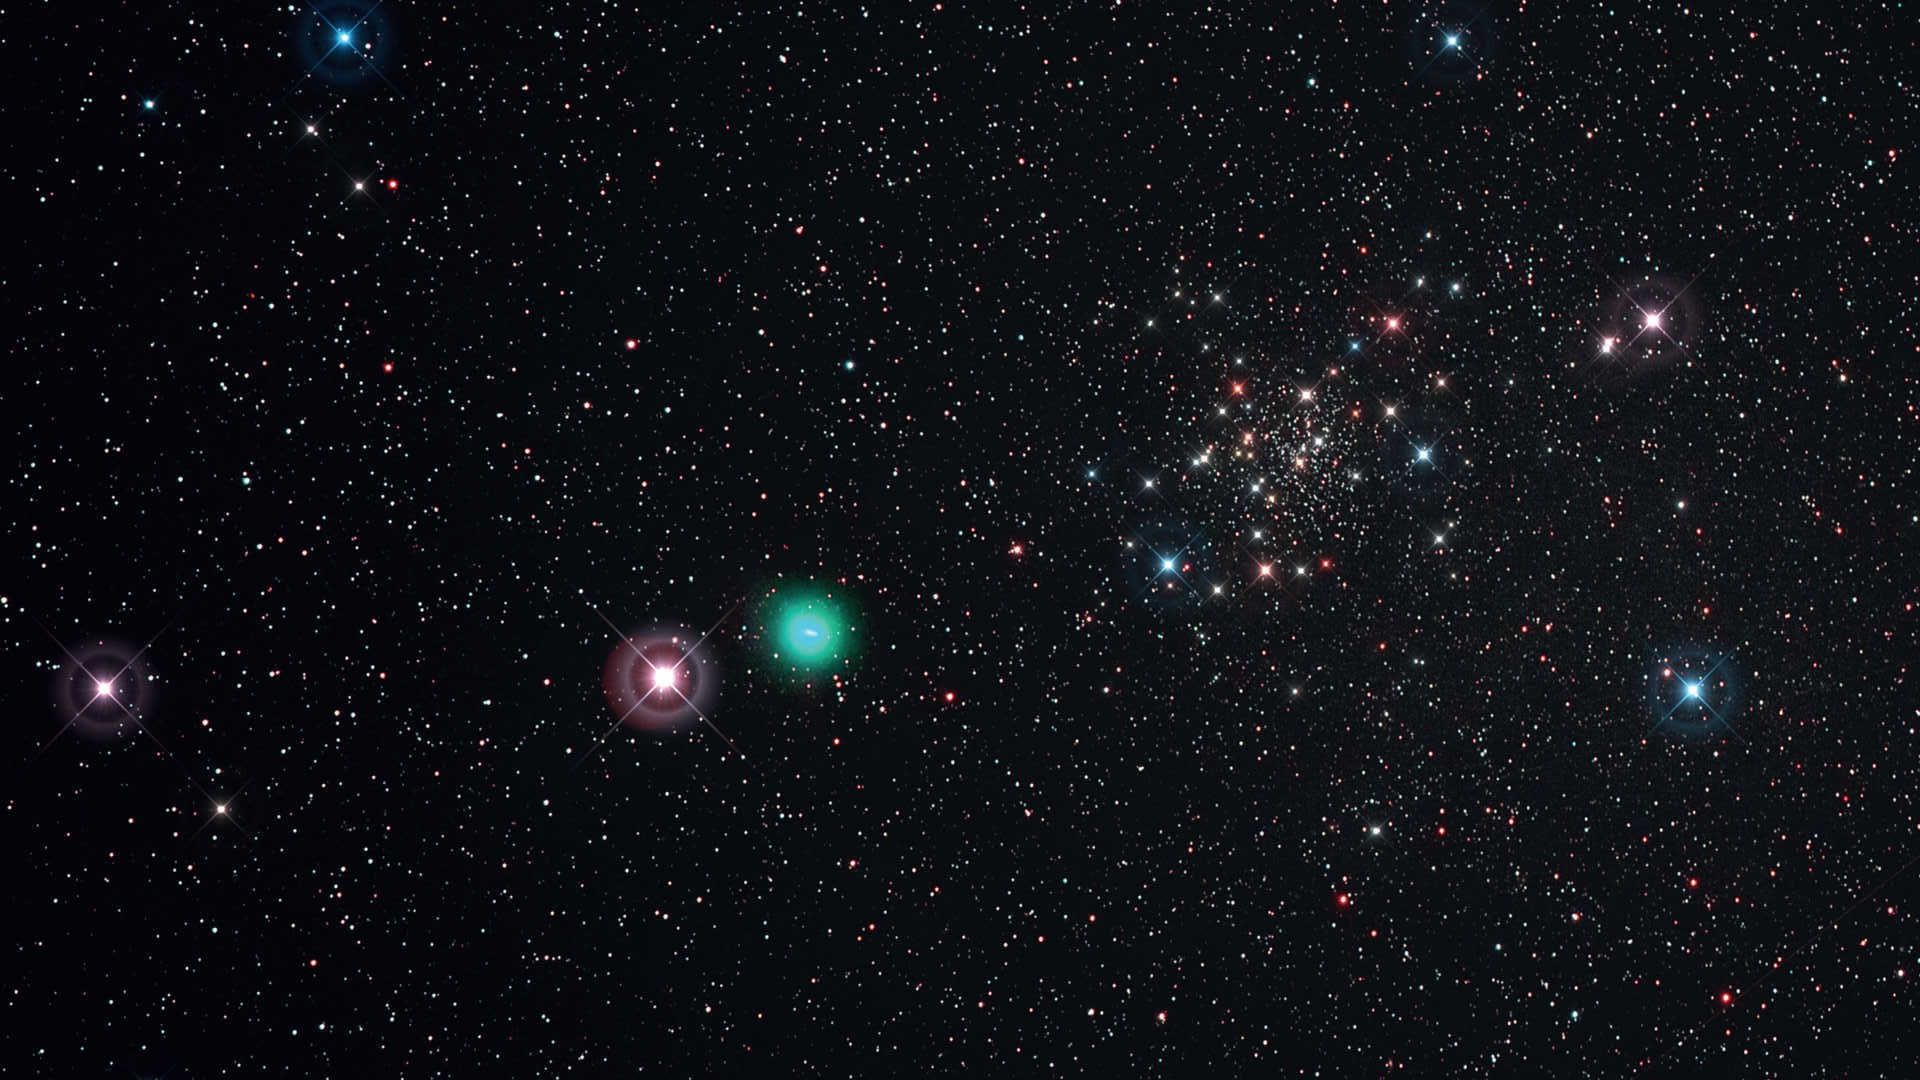 Pogodna noc 21.05.2015 pozwoliła sfotografować kometę C/2014 Q2 (Lovejoy) podczas jej przejścia w pobliżu gromady NGC 188. Zdjęcie zostało wykonane za pomocą teleobiektywu/teleskopu Kowa (ogniskowa: 350mm, f/4) oraz aparatu Canon D6 (Hα-mod) z filtrem UHC-S. Sumaryczny obraz to sześć ekspozycji o czasie naświetlania 450 sekund każda (ISO 800; łączny czas naświetlania: 45 minut). Obróbka: DeepSkyStacker i Photoshop; Spajki dodane jedynie ze względów estetycznych. U. Dittler